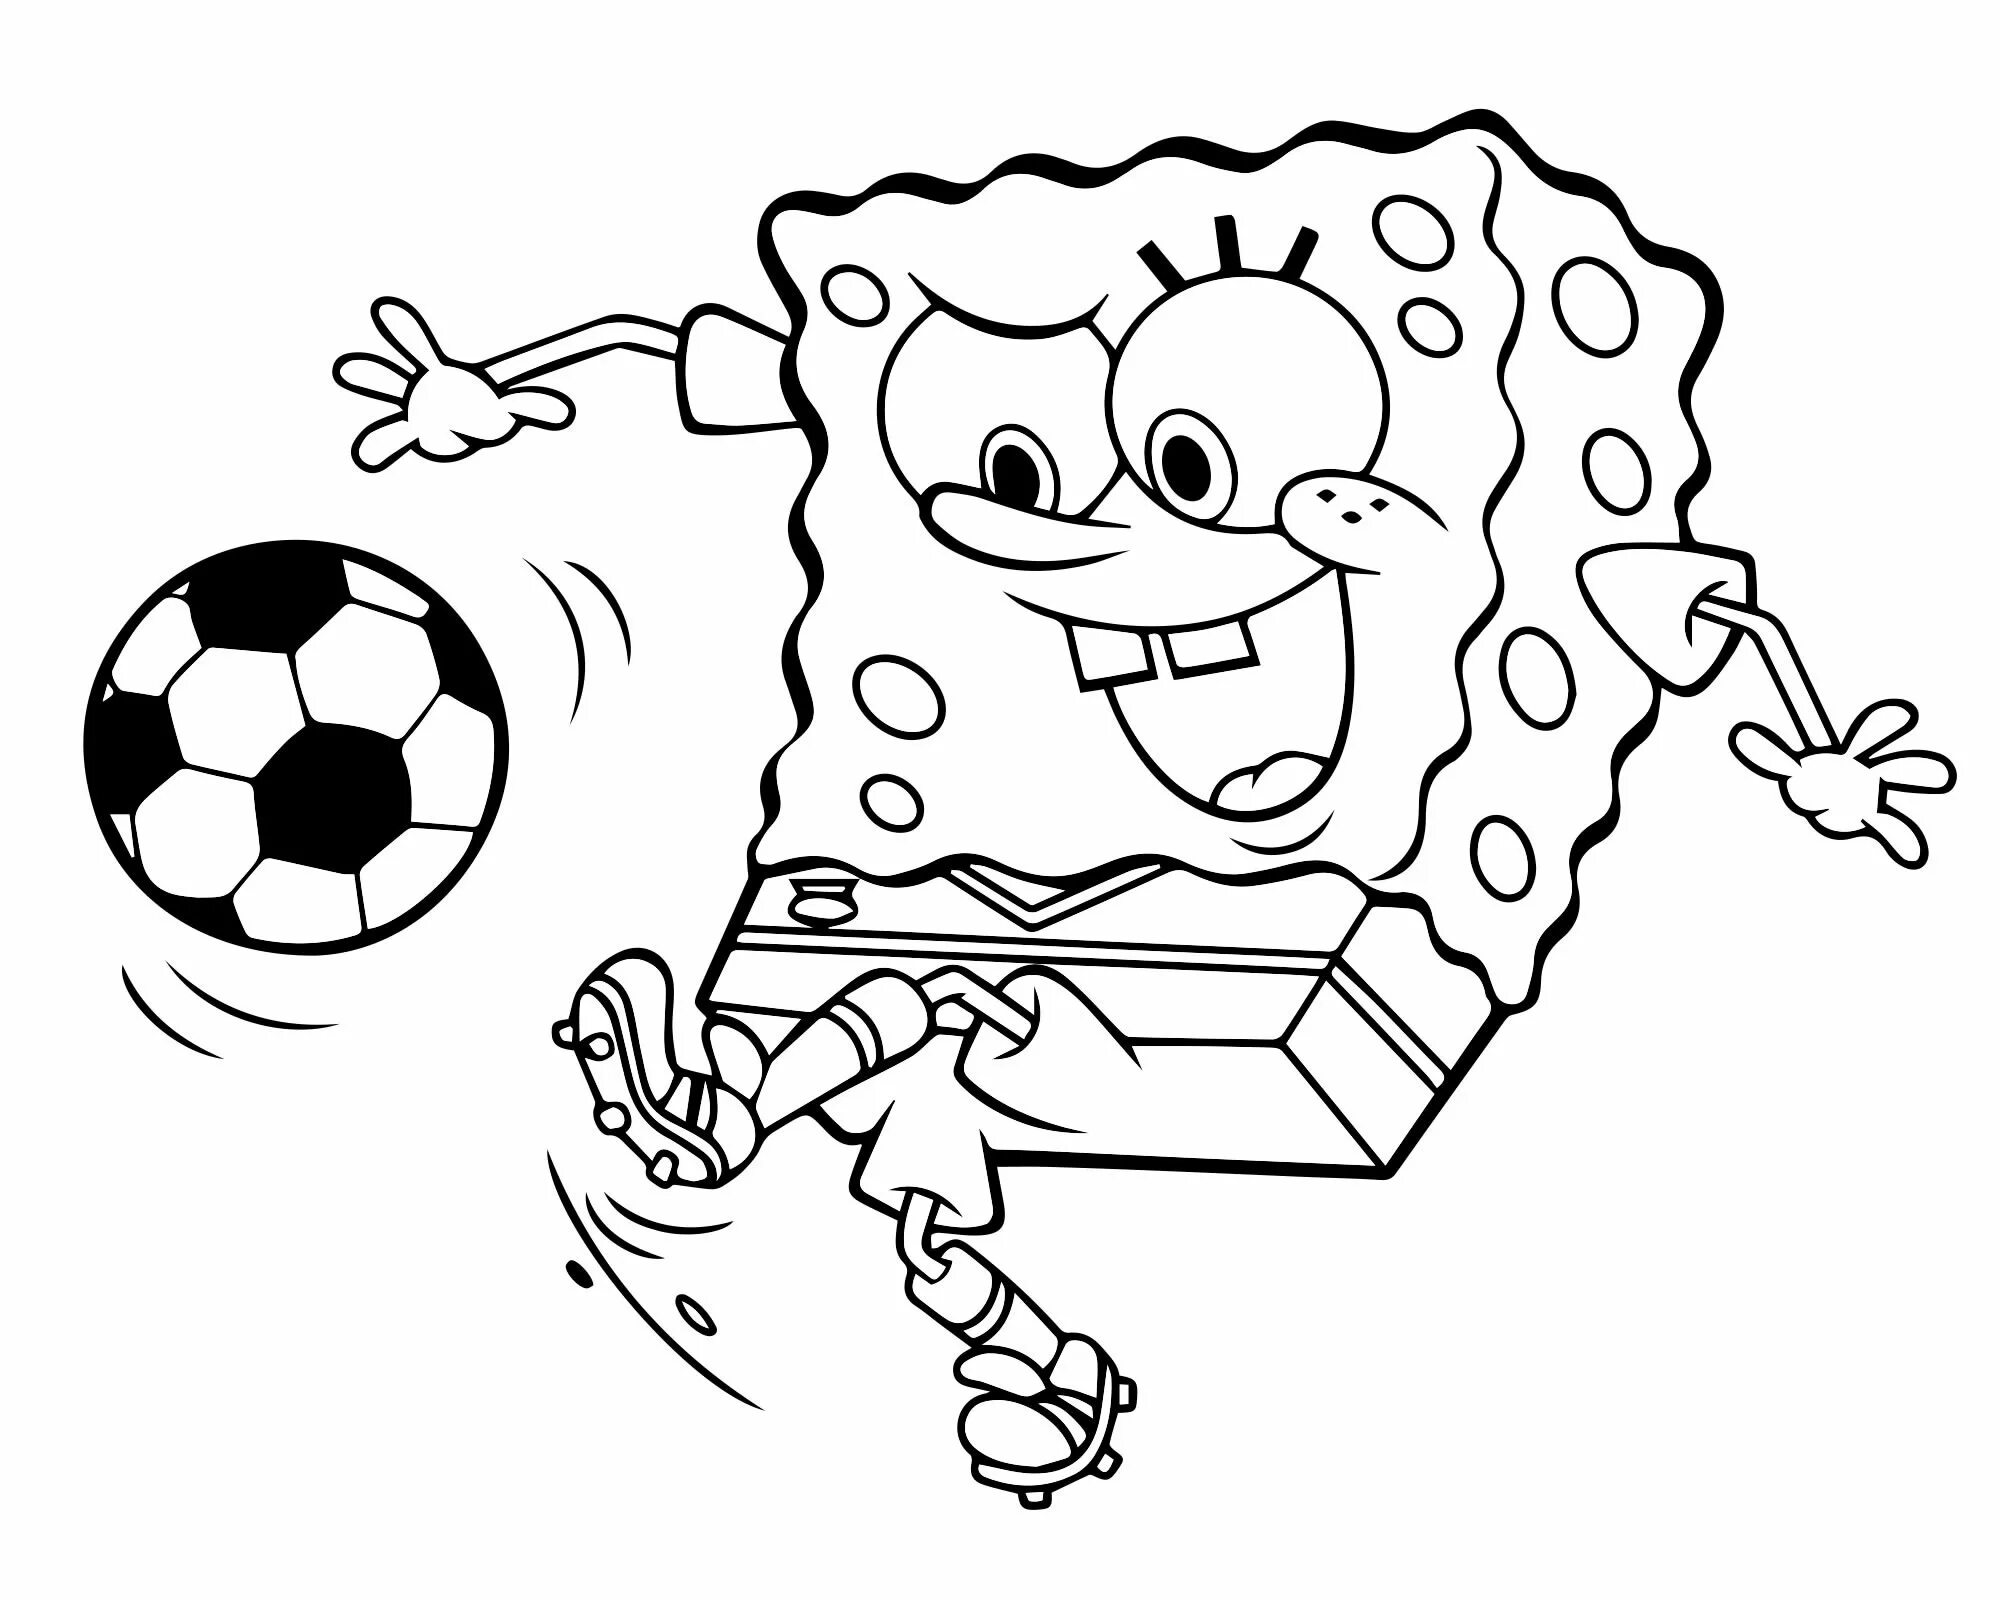 Игра Раскраска Губка Боб | Spongebob Coloring - Играть Онлайн! Бесплатно